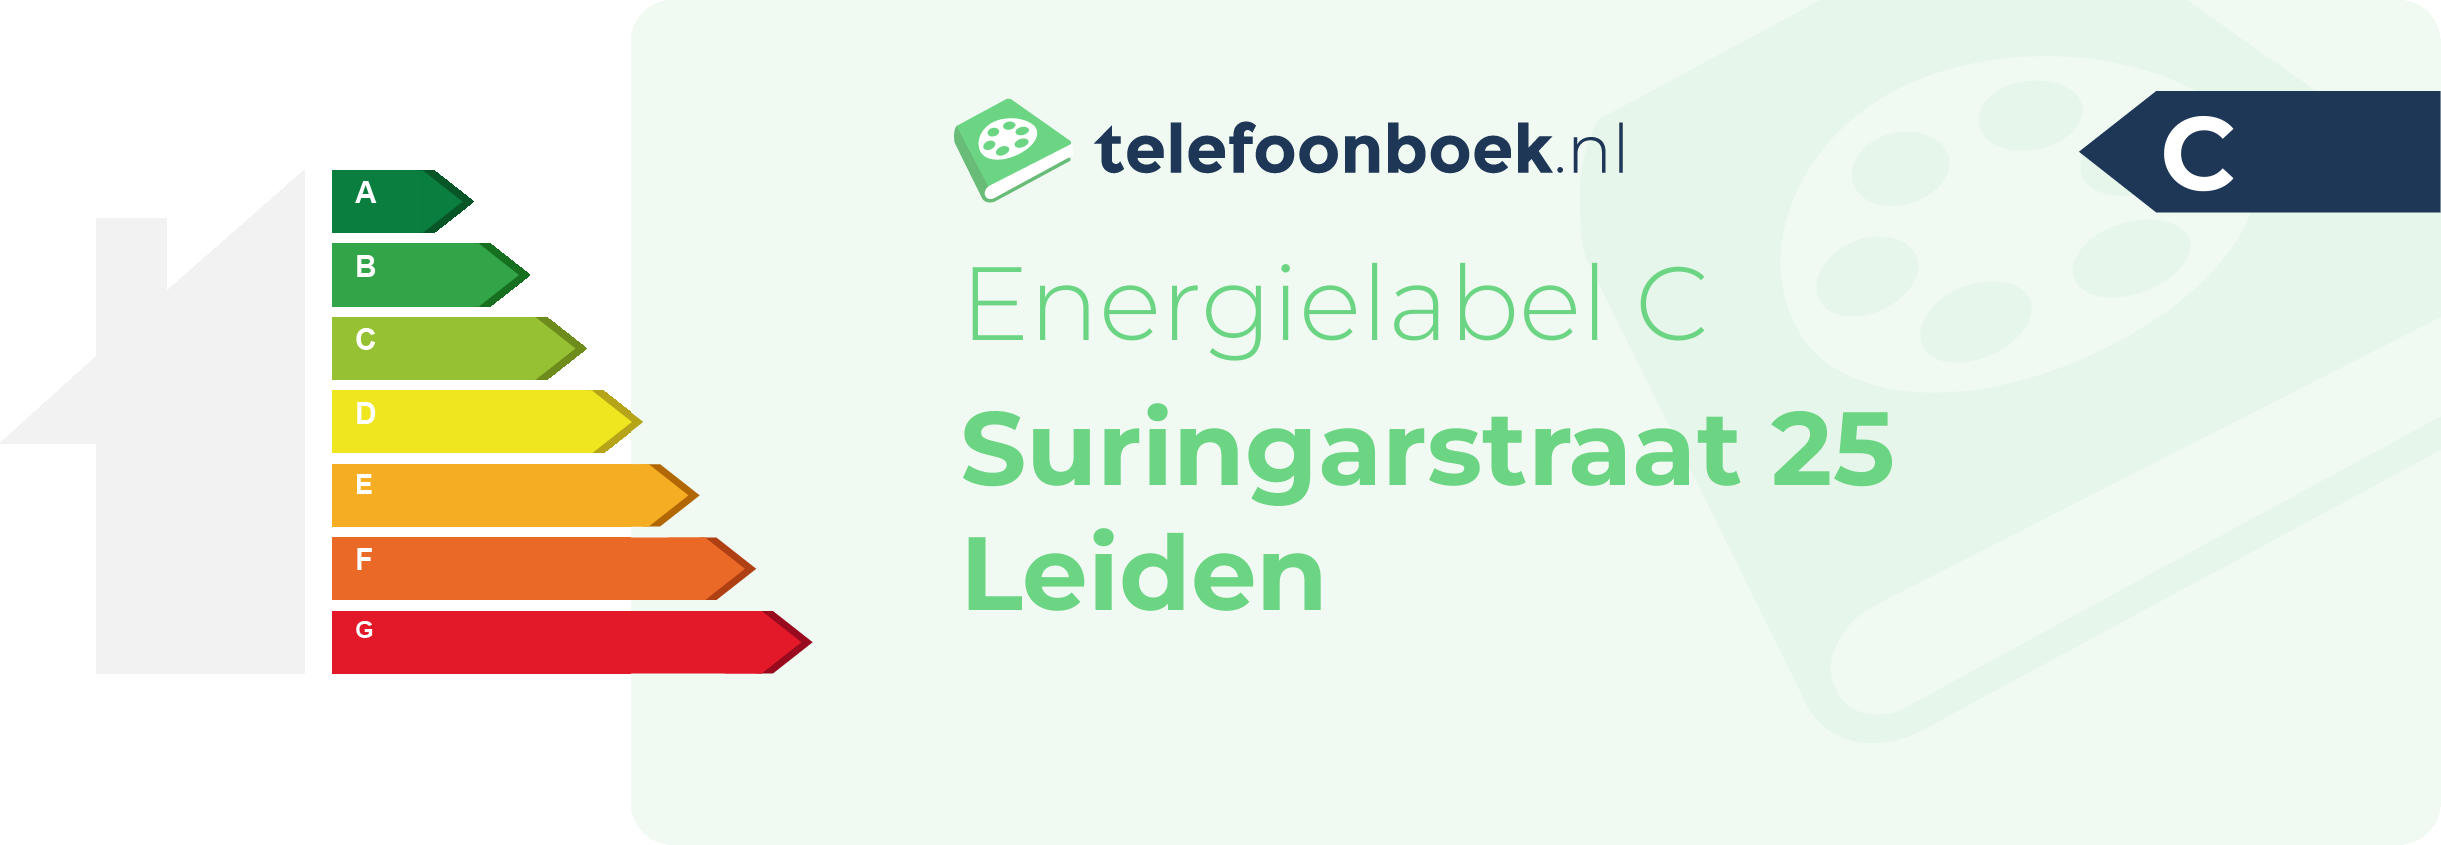 Energielabel Suringarstraat 25 Leiden